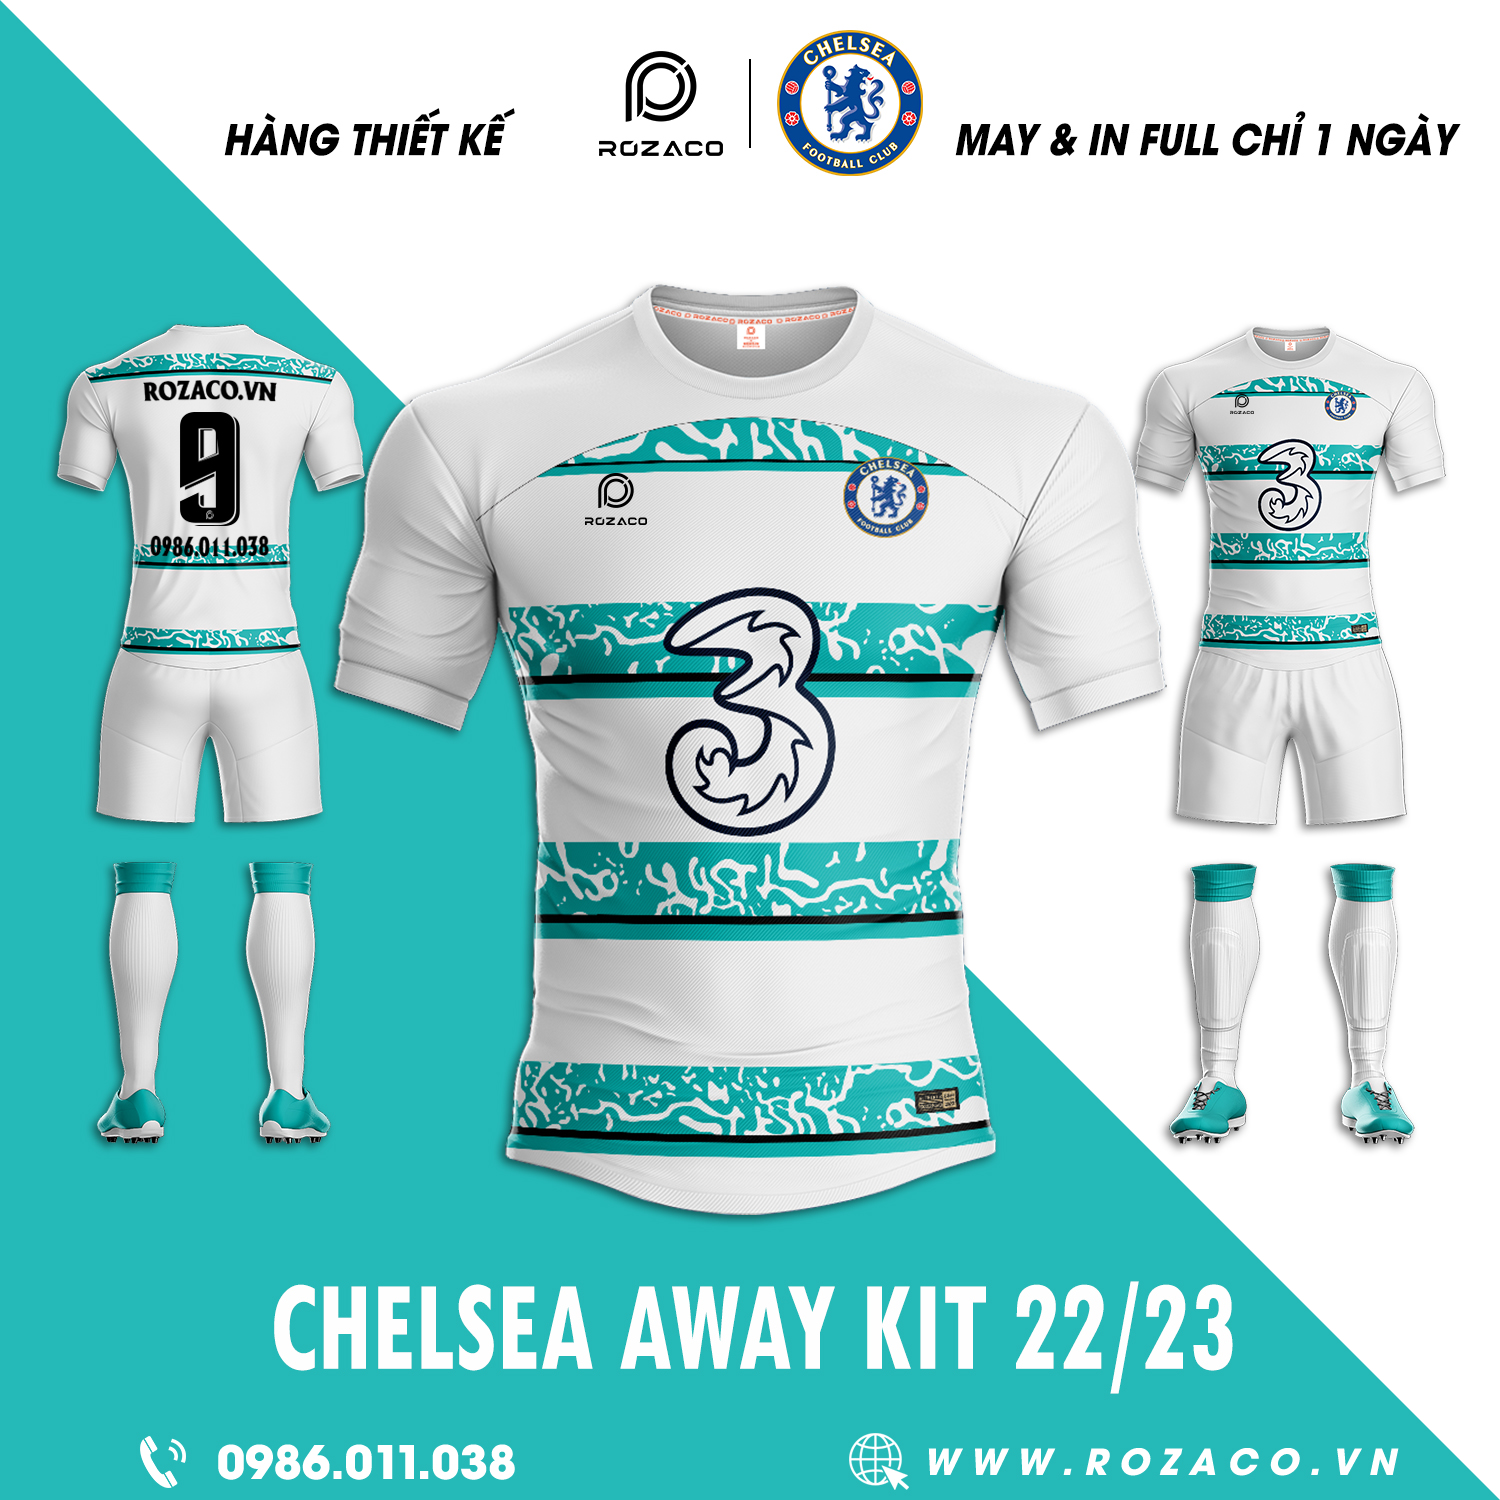 Mẫu quần áo đá bóng CLB Chelsea sân khách 2022 có màu trắng làm màu chủ đạo. Nó được điểm bằng đường kẻ sọc ngang có màu xanh real ấn tượng. Thiết kế này đã đủ để làm bạn ấn tượng chưa nào?